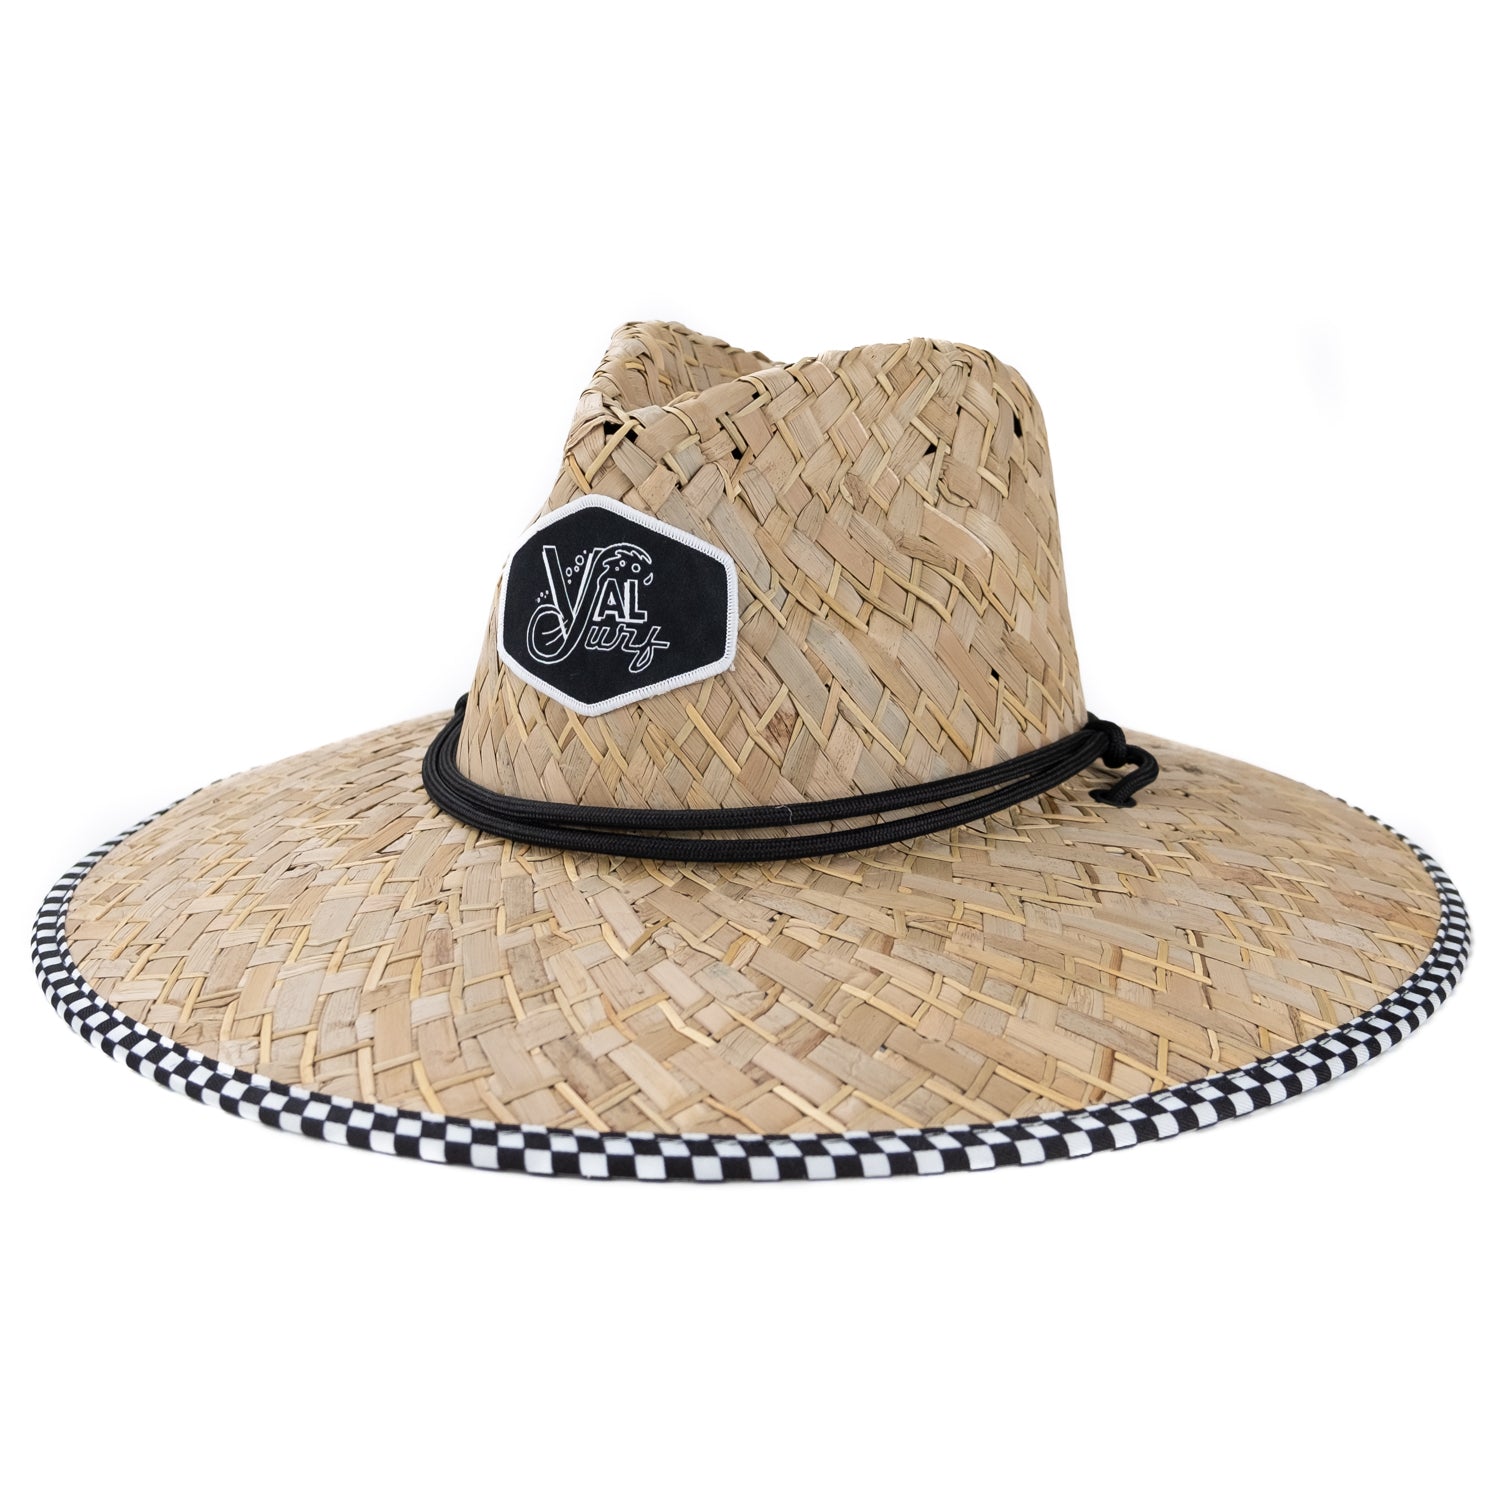 OG Indy Straw Hat - Black